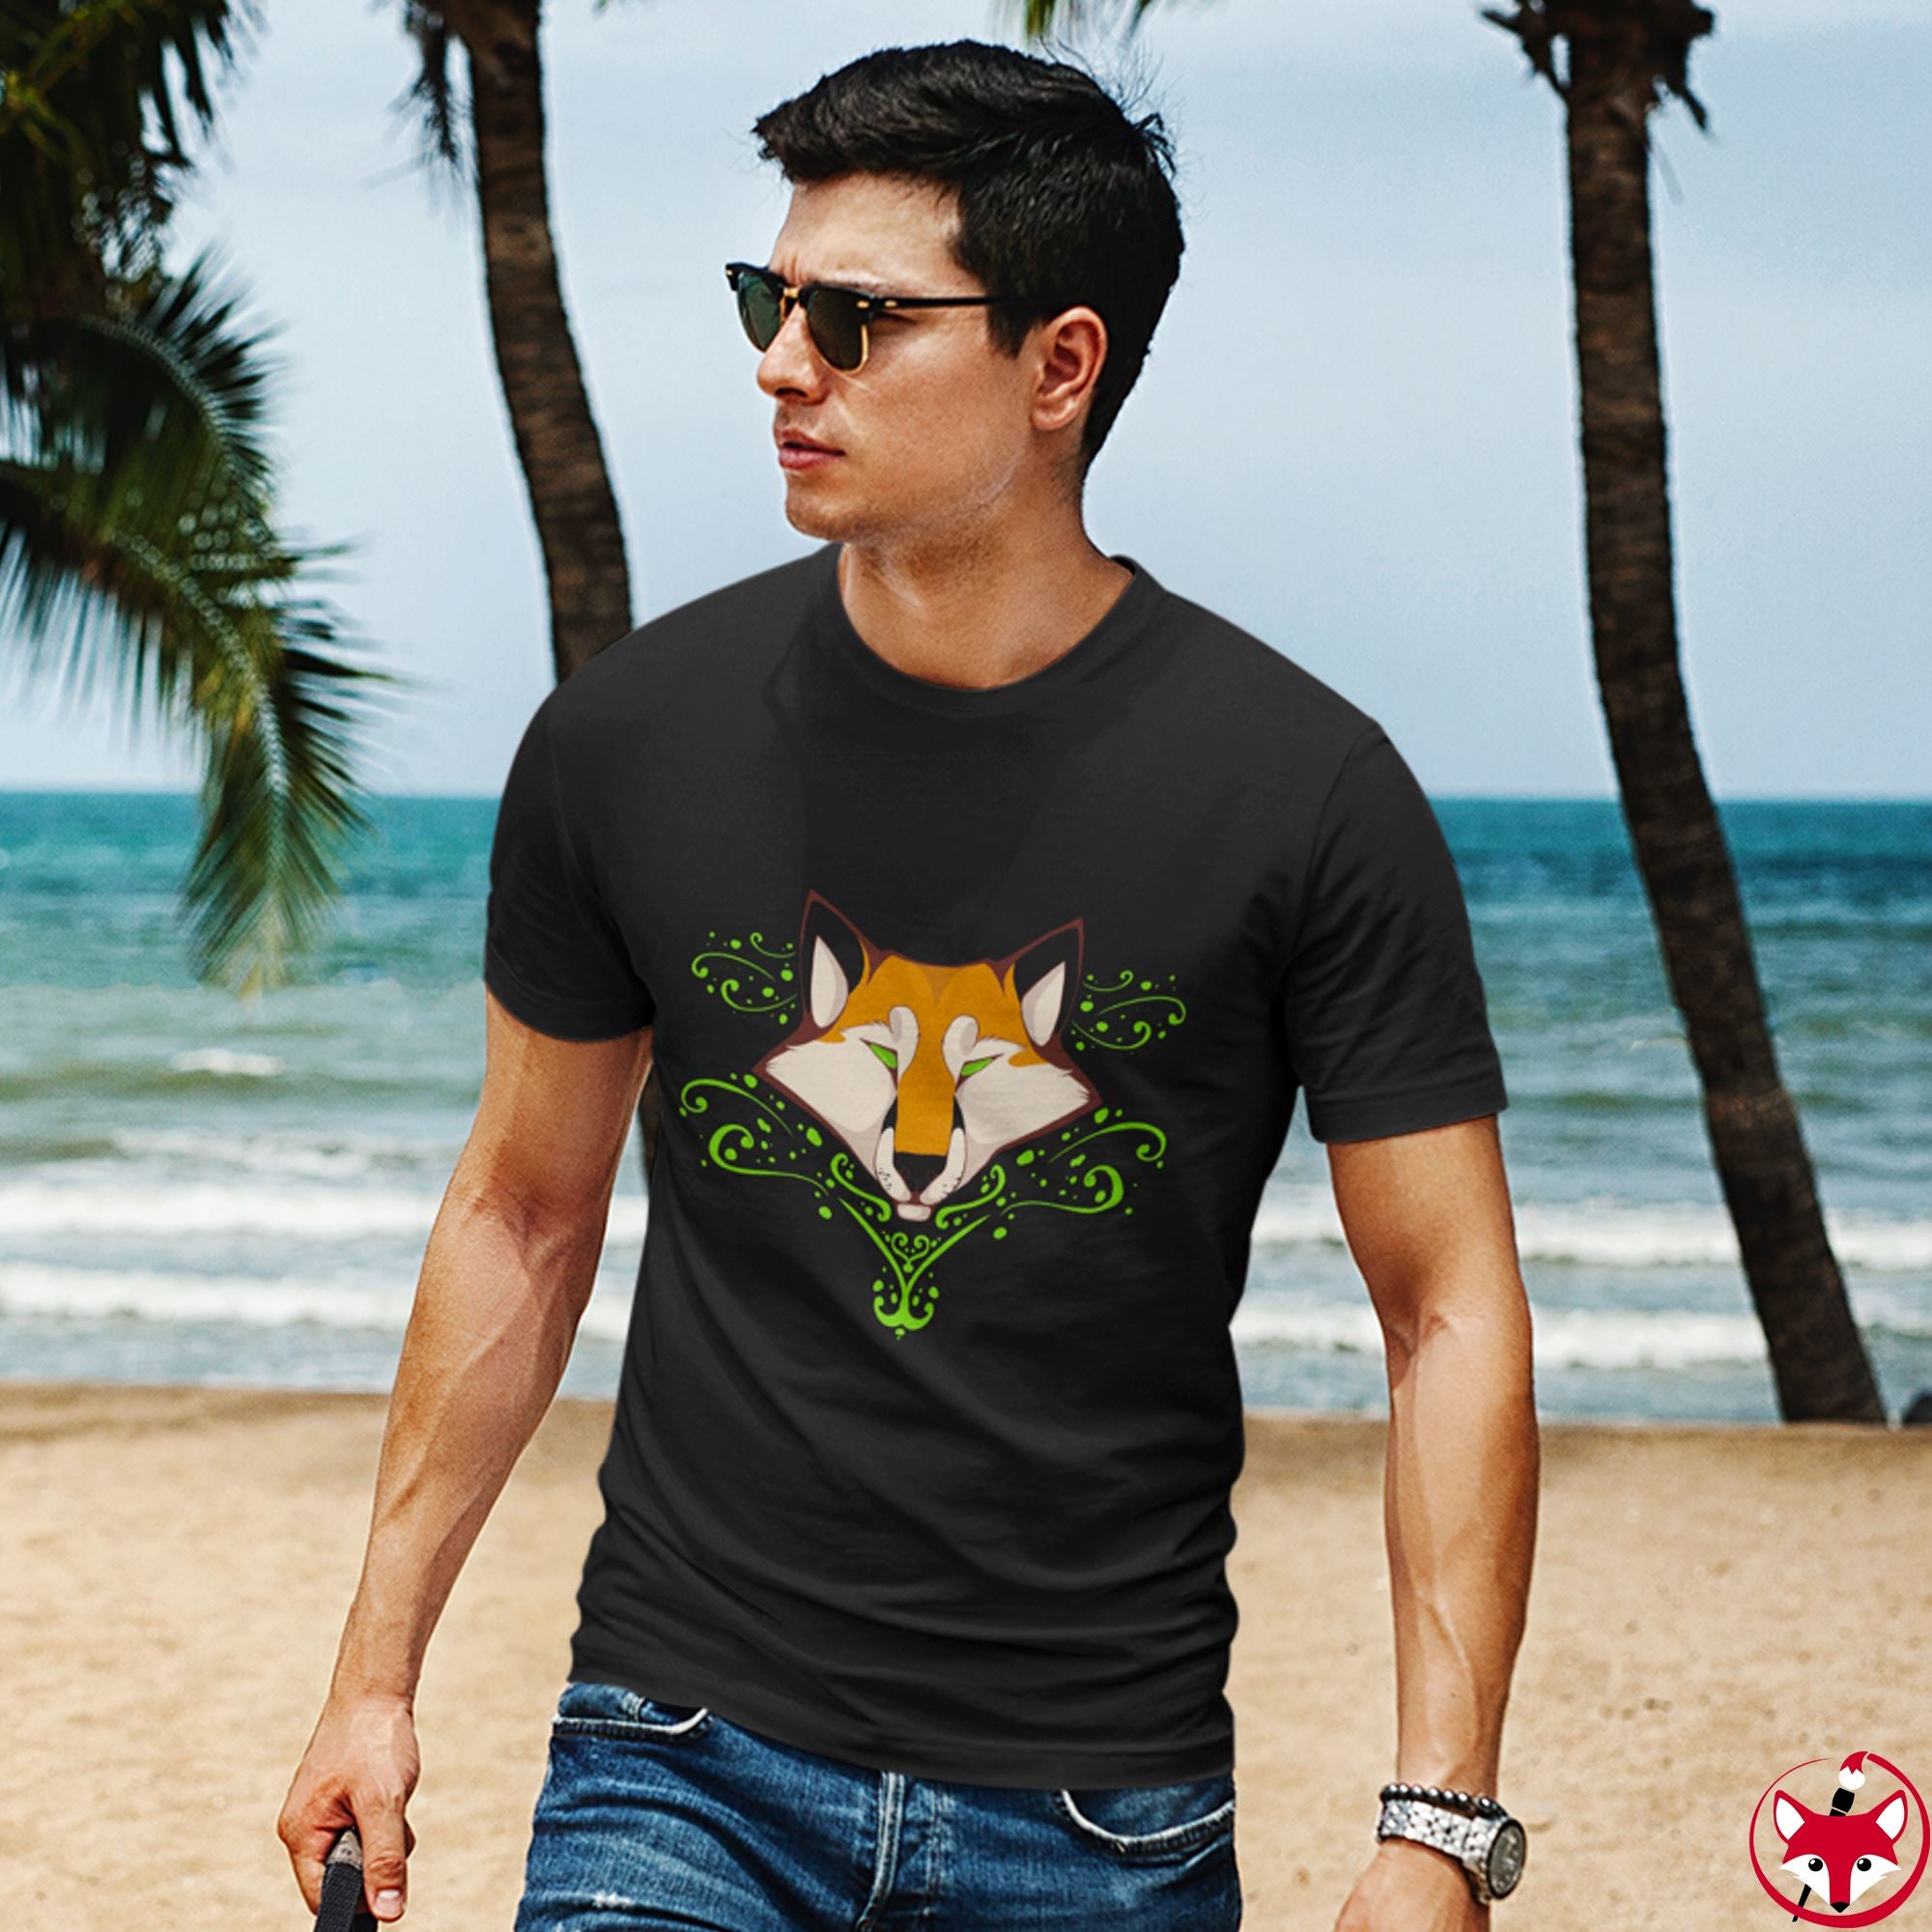 Fox - T-Shirt T-Shirt Dire Creatures 